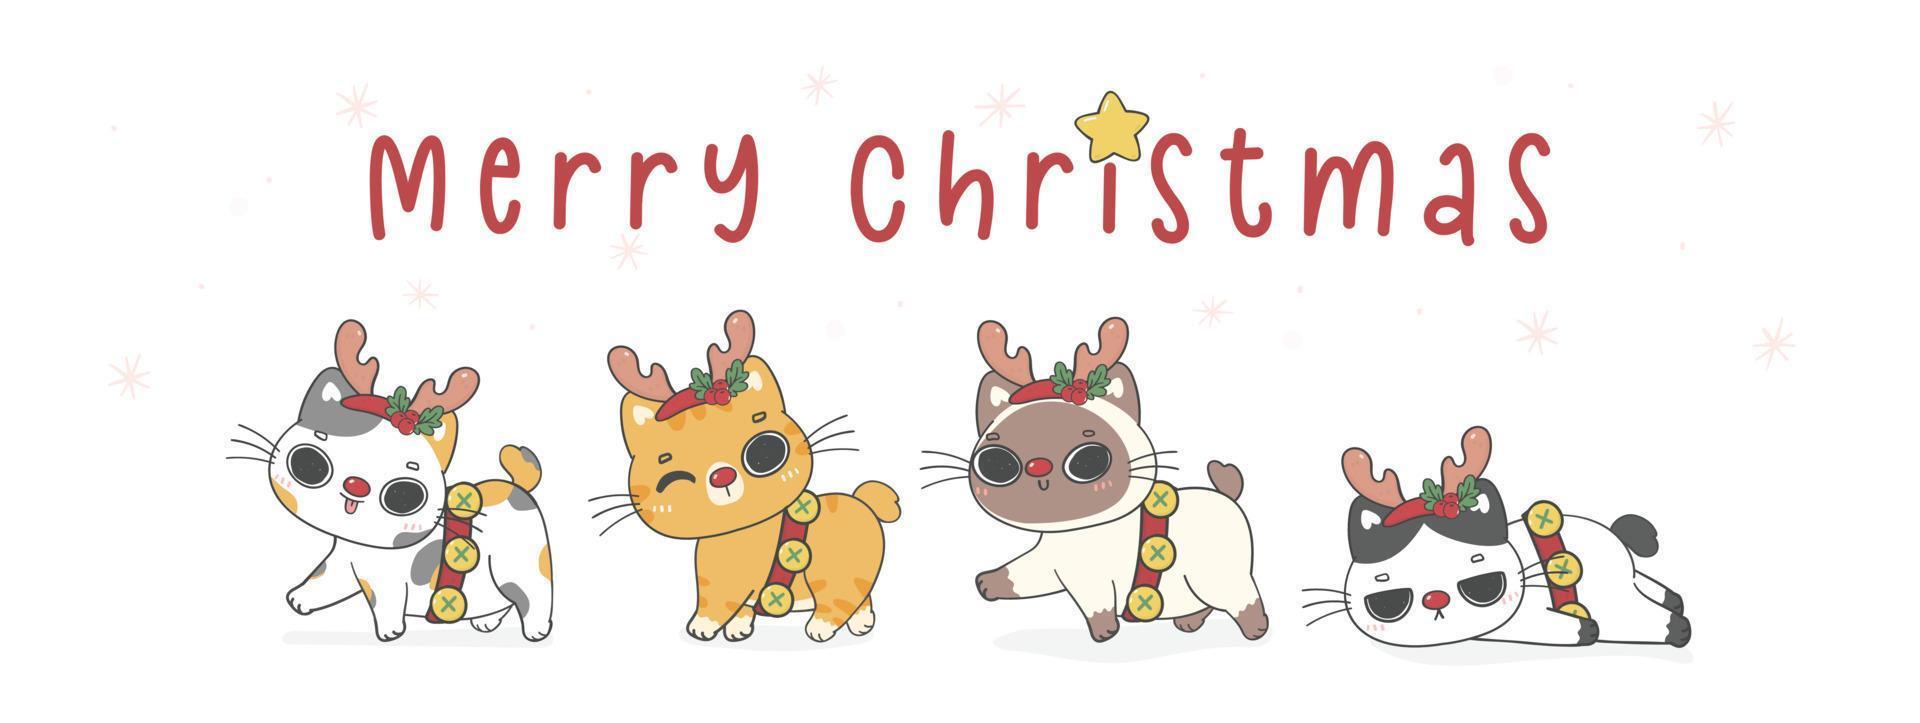 gruppe süßer kätzchenkatzen mit chirstmas rentiergeweihkarikaturhandzeichnung, frohe weihnachten, flache illustrationsvektorfahne vektor